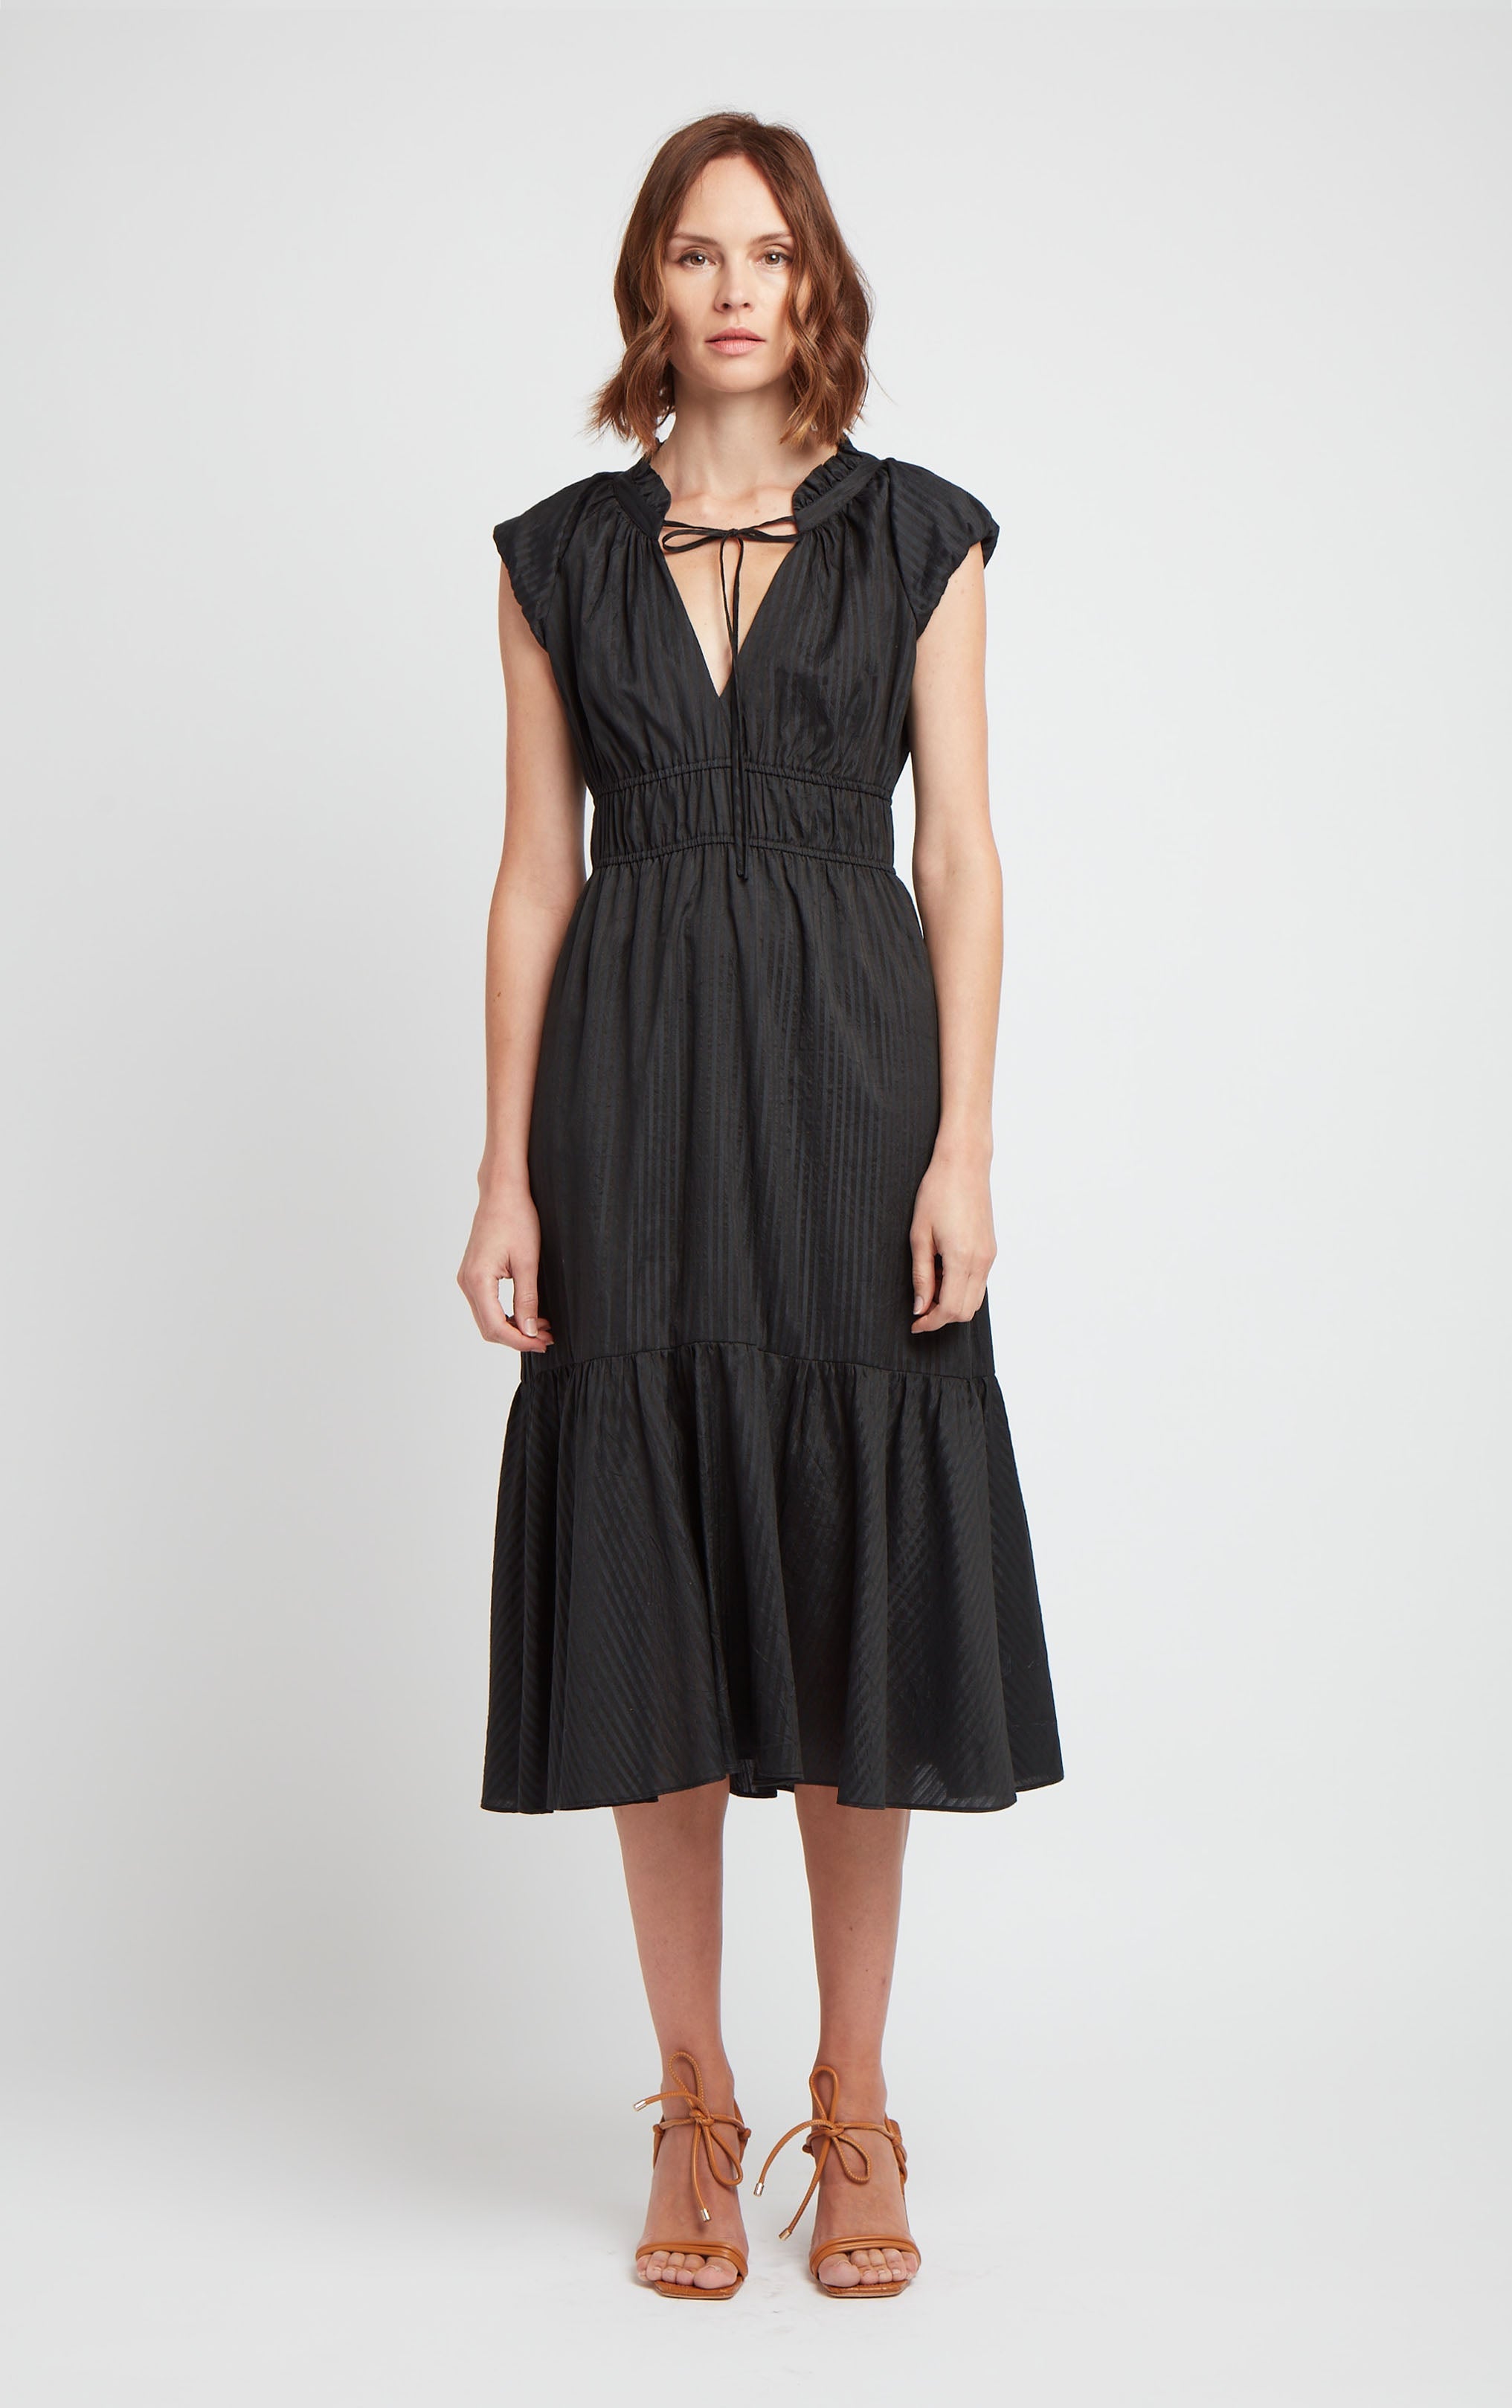 odette-dress-black-cotton-silk-blend-front-4